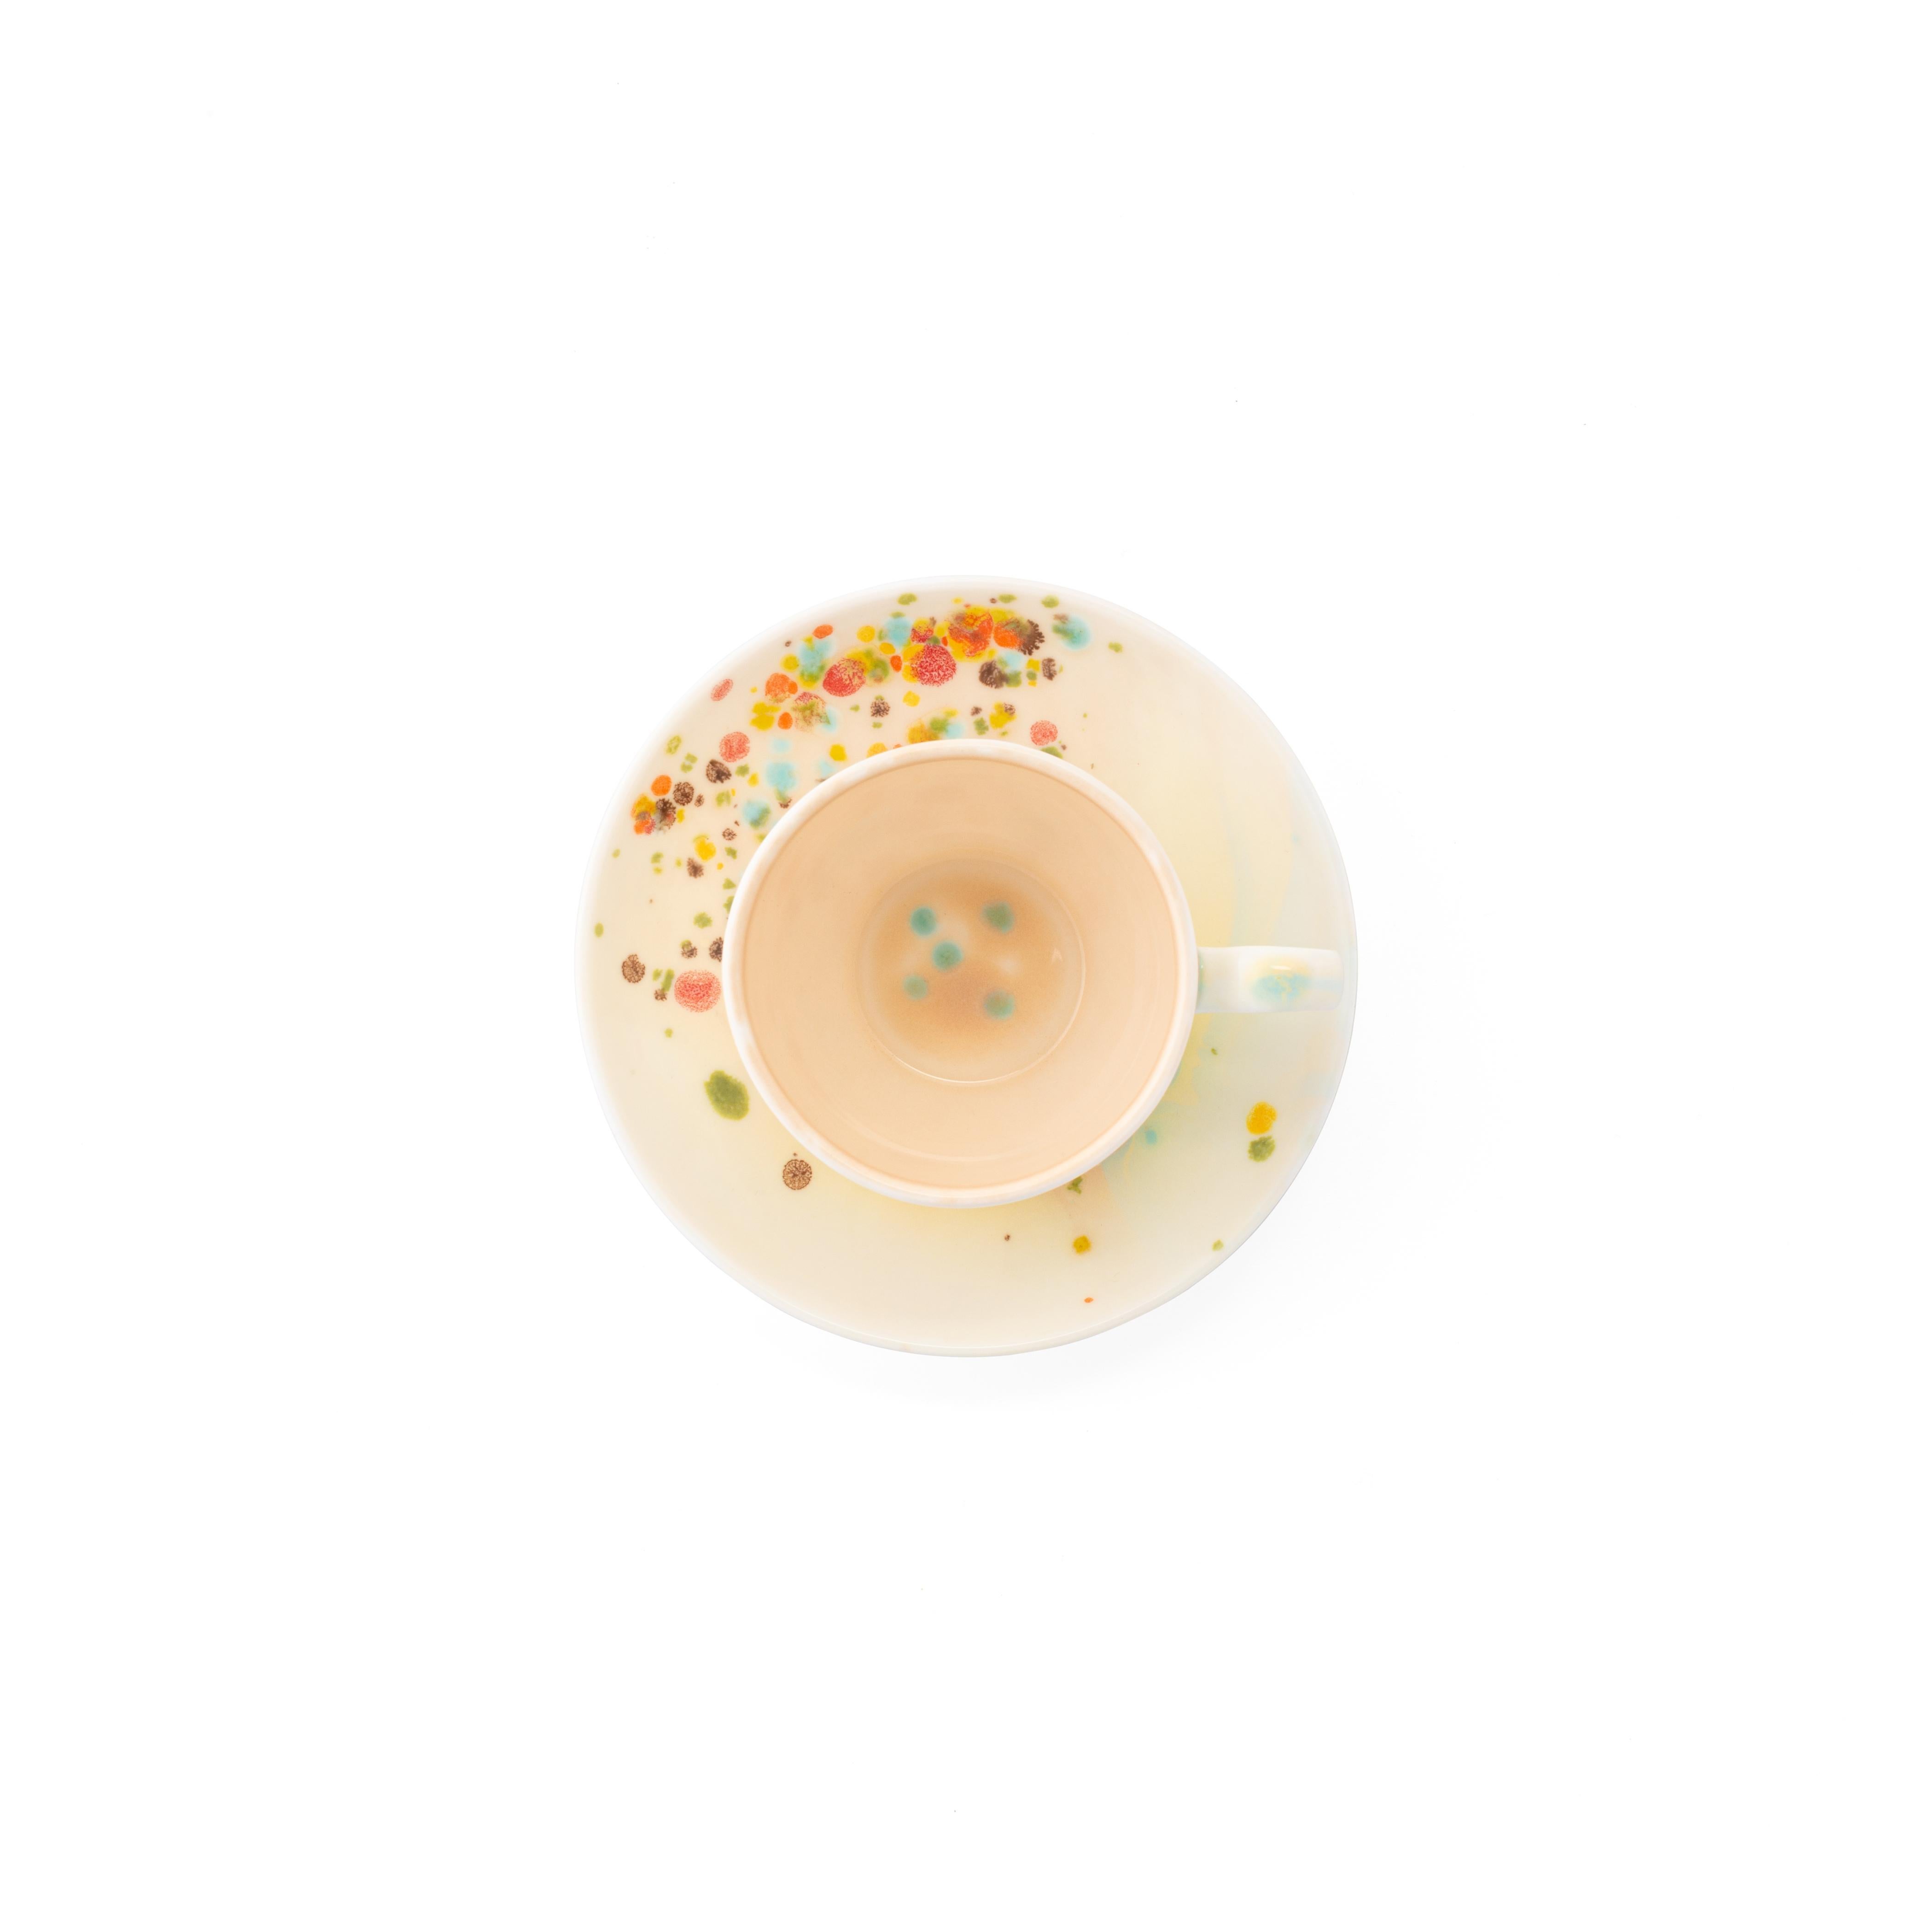 Diese 2 Kaffeetassen und Untertassen aus der Chestnut Collection werden in Italien aus feinstem Porzellan handgefertigt. Sie haben ein mehrfarbiges, gepunktetes Dekor in Form einer Kaskade, während die Innenseite in einer sandfarbenen Farbe bemalt